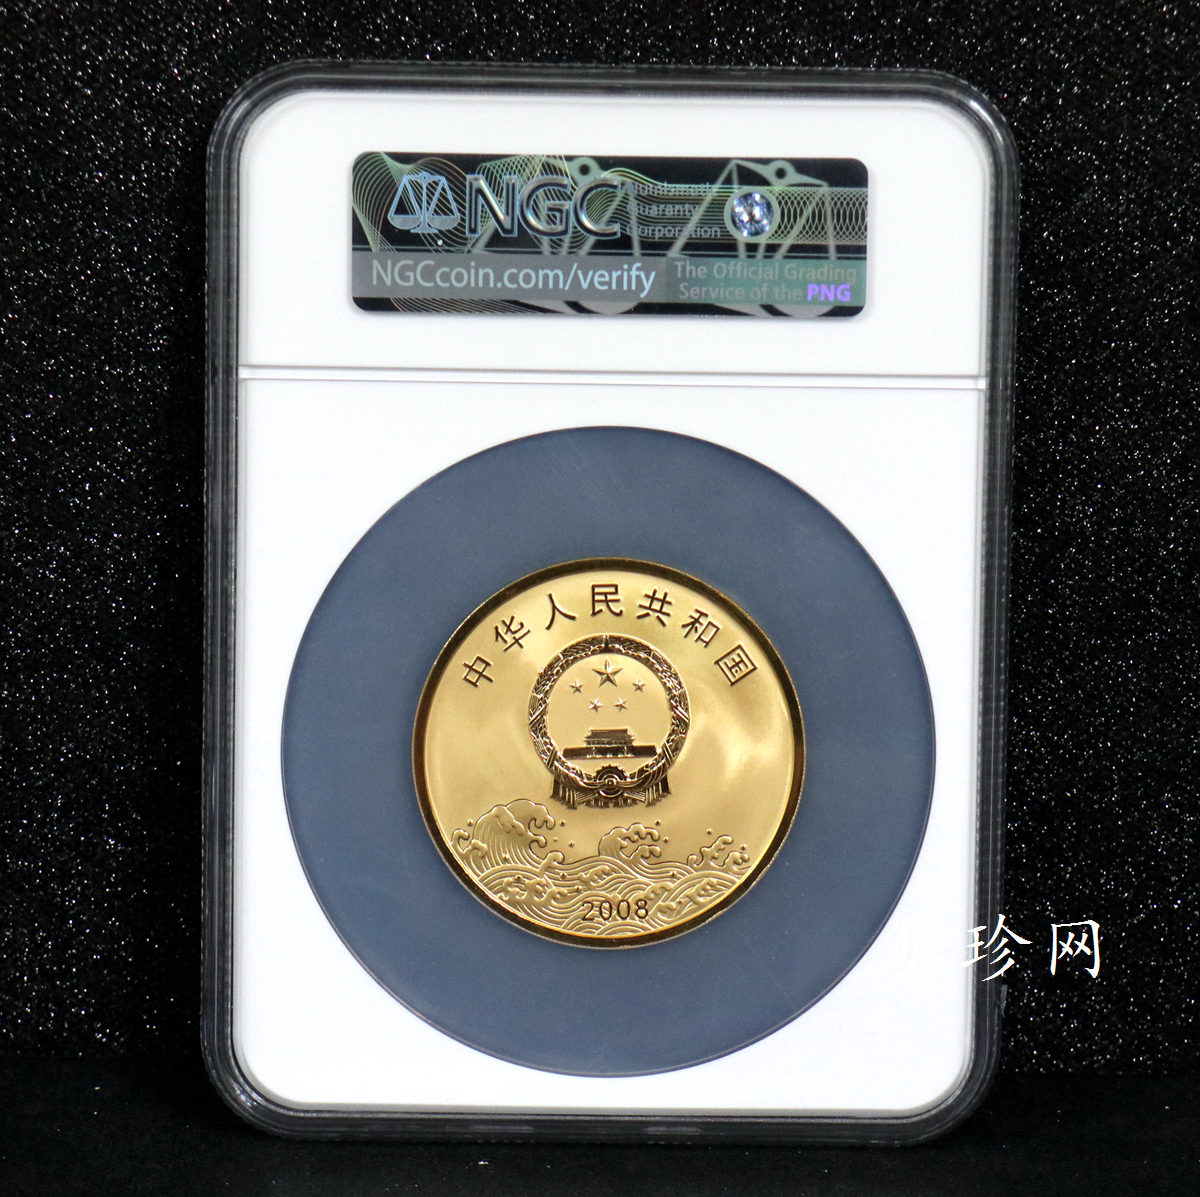 【080903】2008年改革开放30周年5盎司精制金币